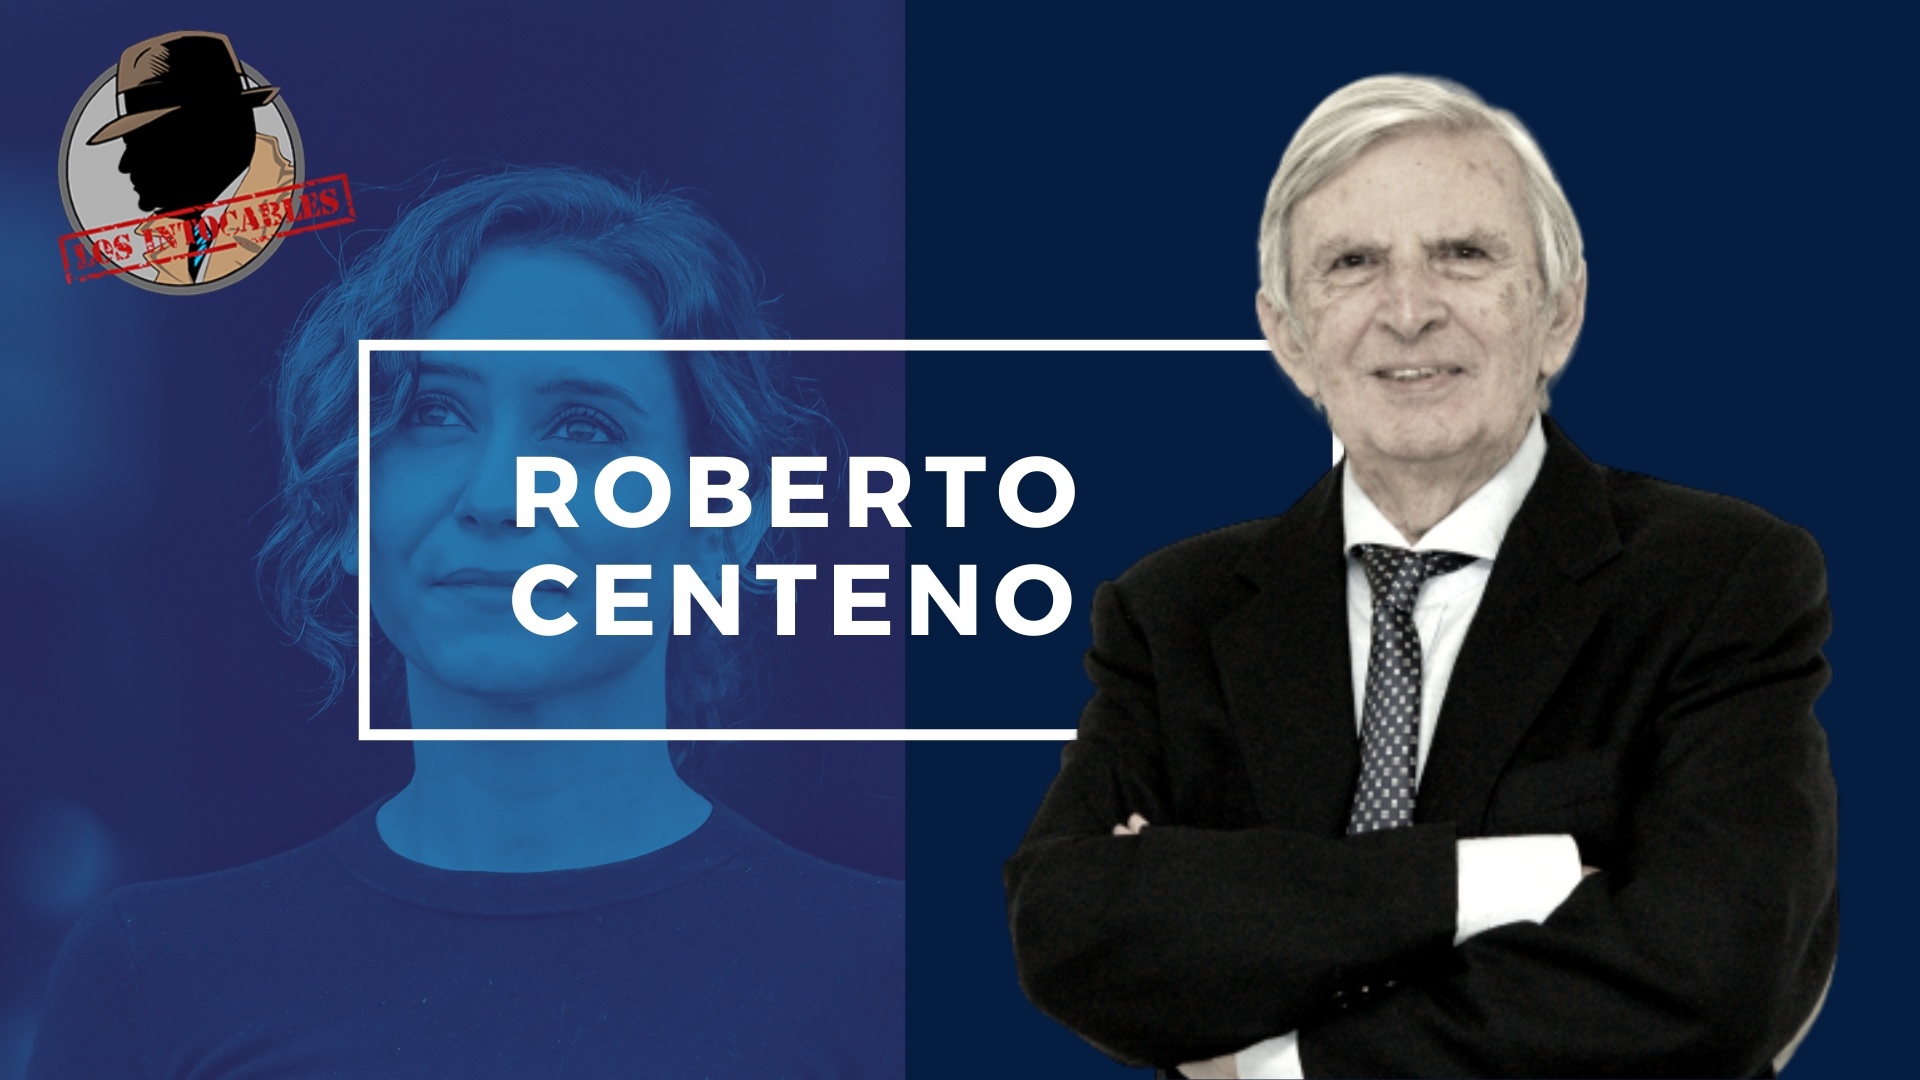 Roberto centeno